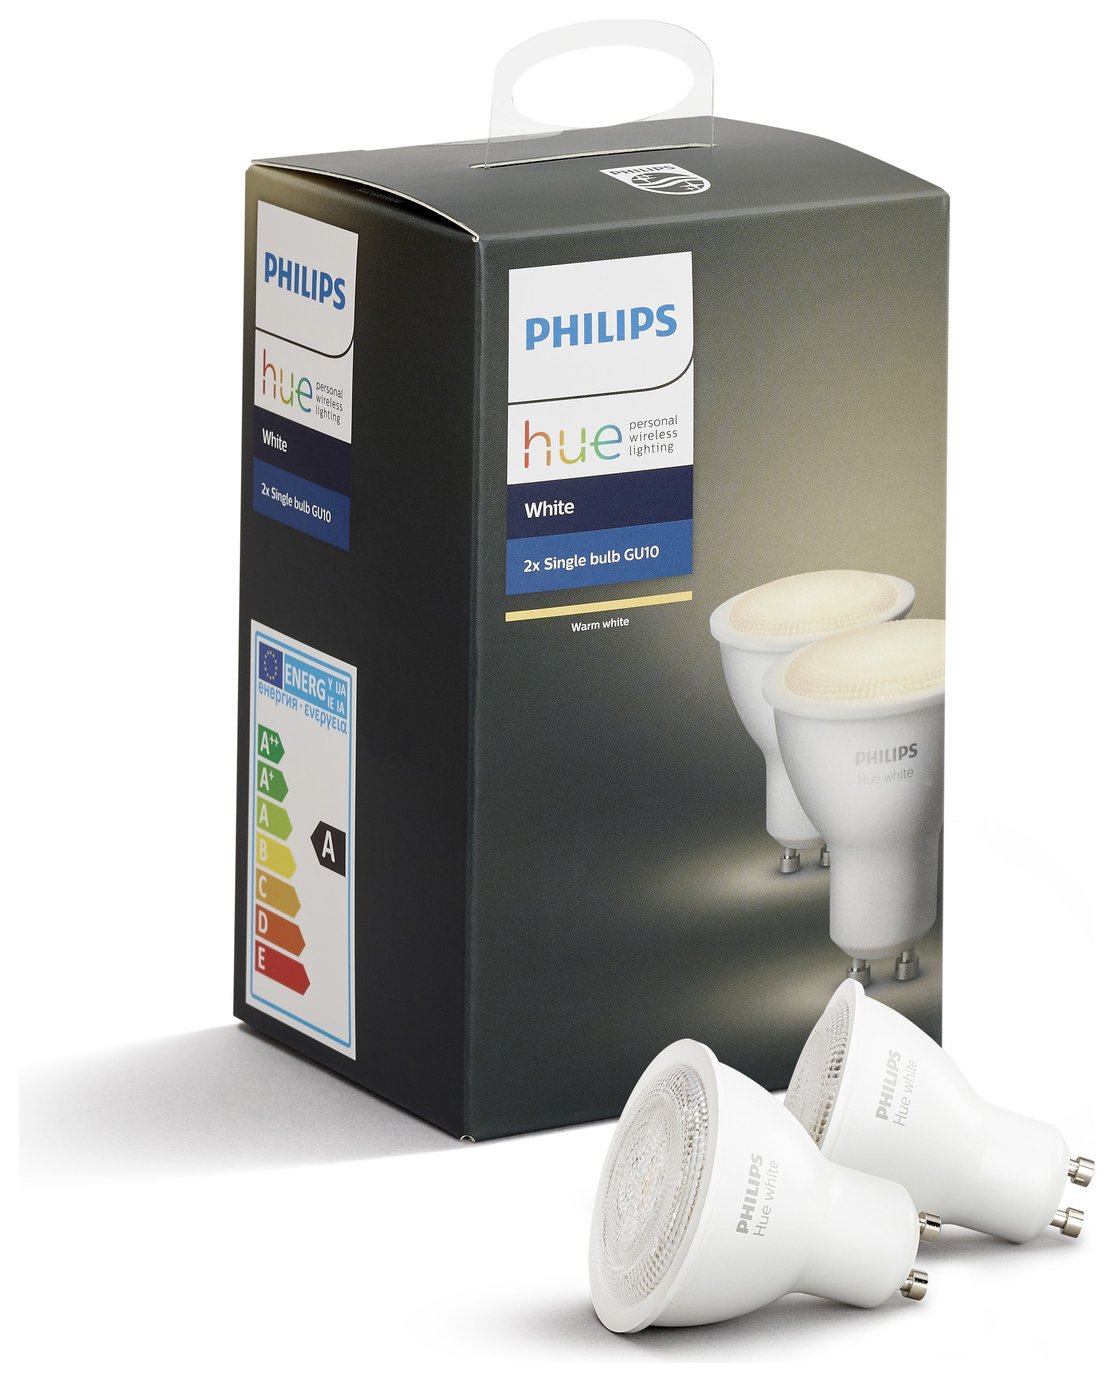 Philips Hue White GU10 Bulb Twin Pack